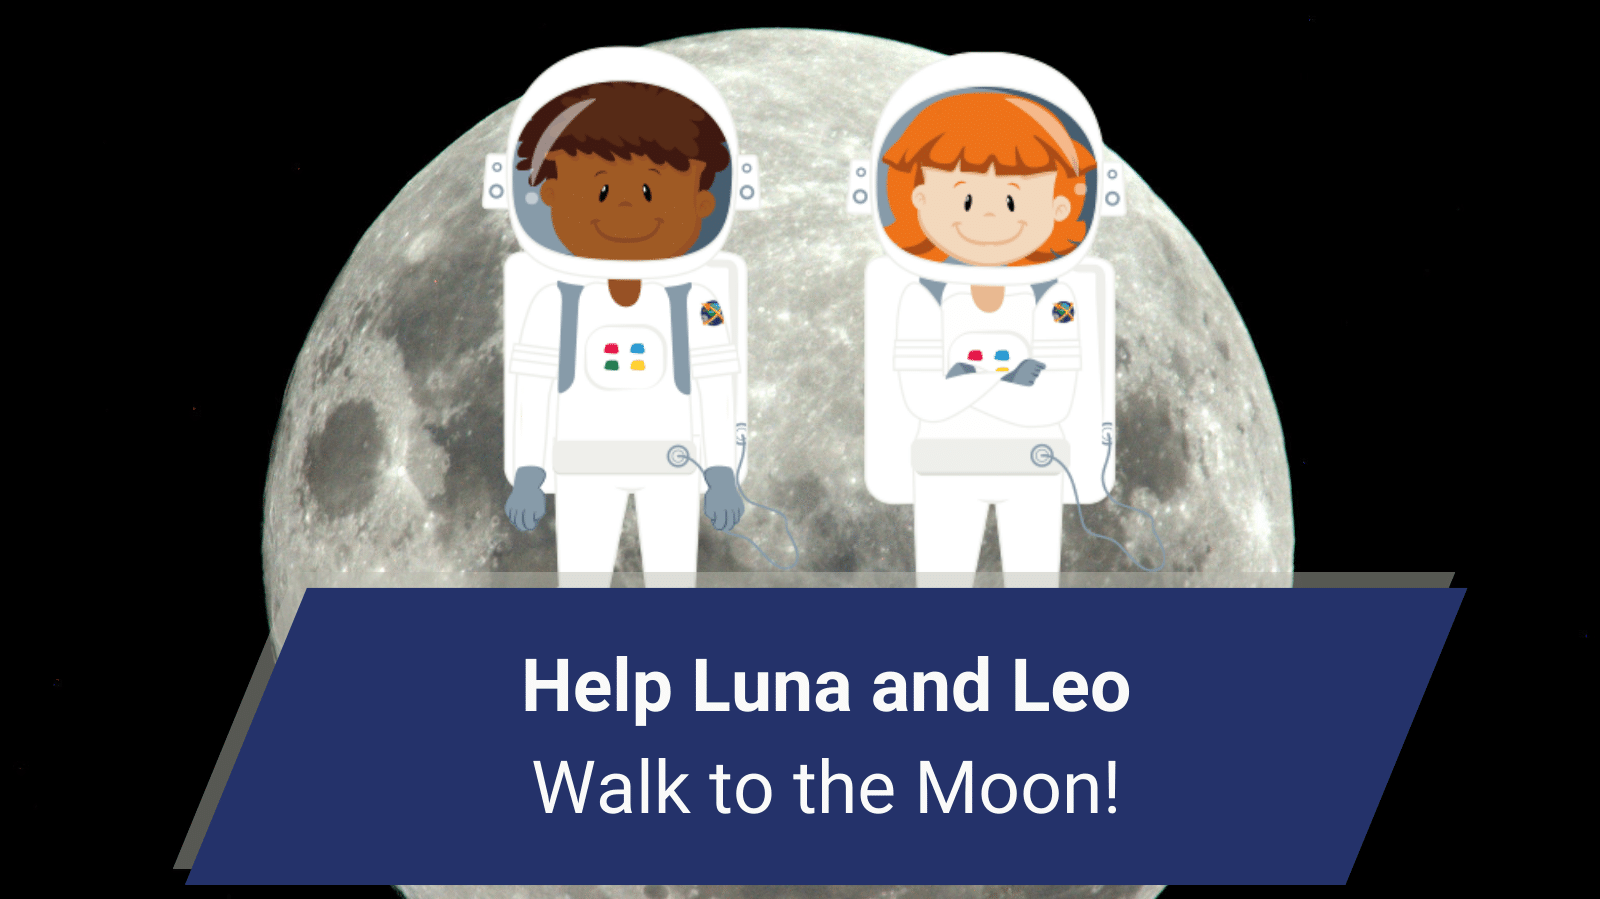 Aiutate Luna e Leo a camminare verso la Luna!